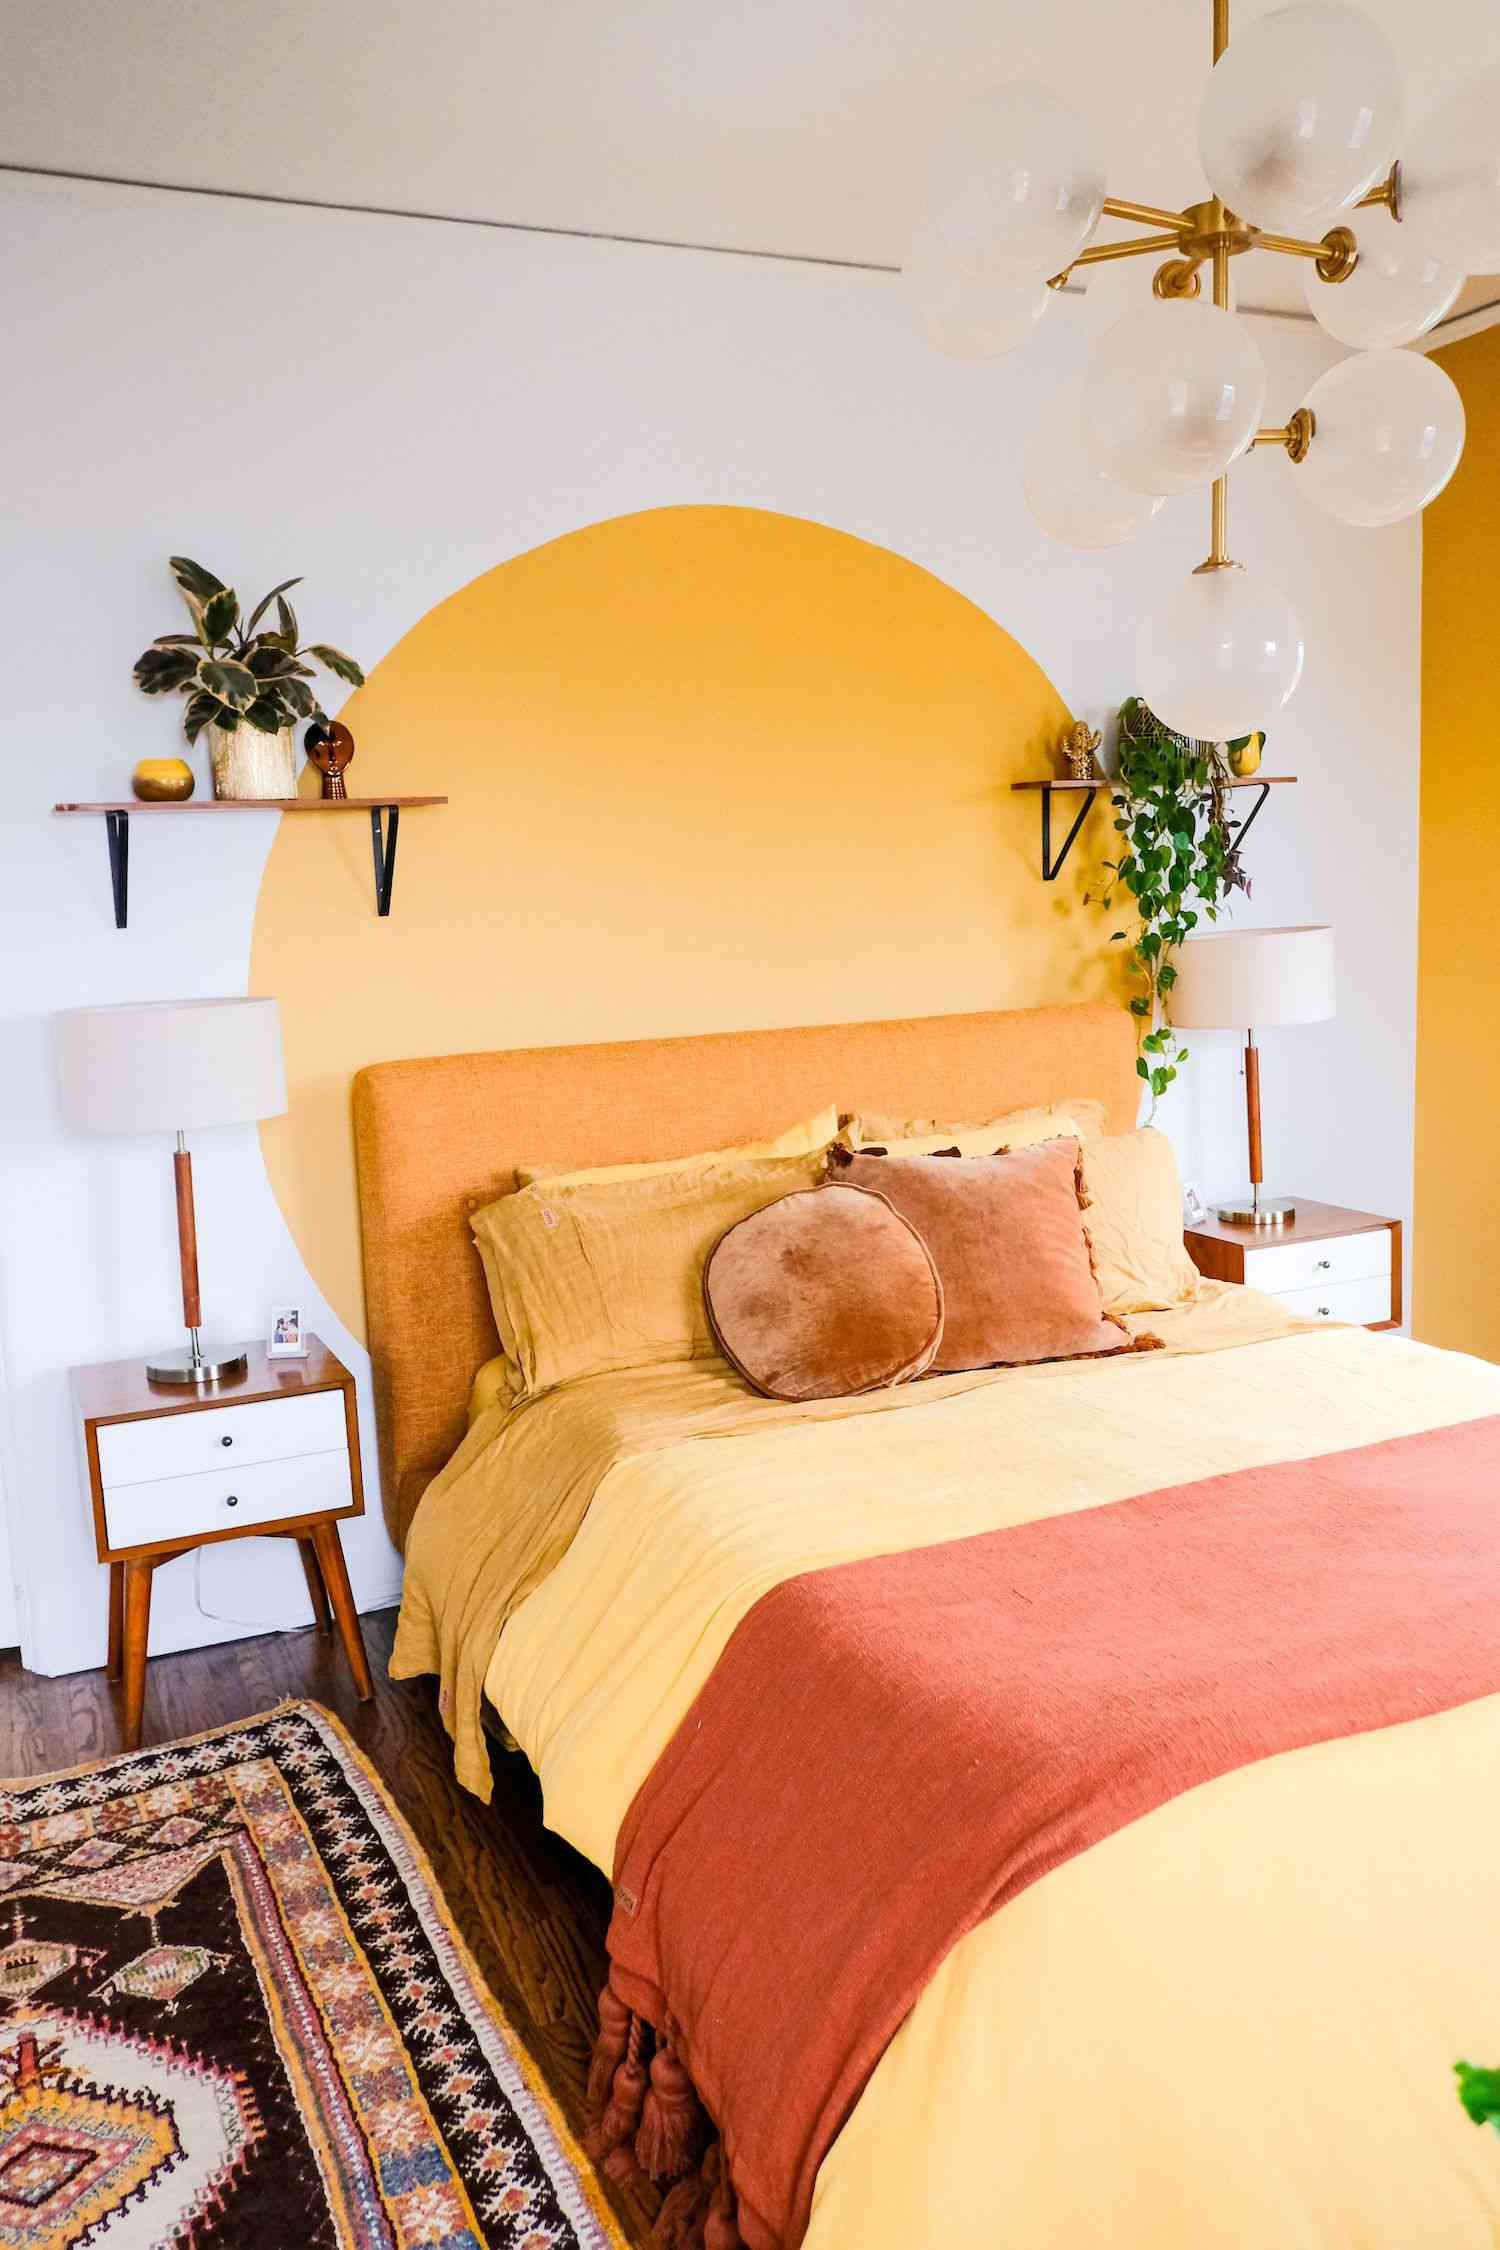 quarto com mural de círculos amarelos na parede branca, lençóis amarelos, prateleira flutuante com plantas